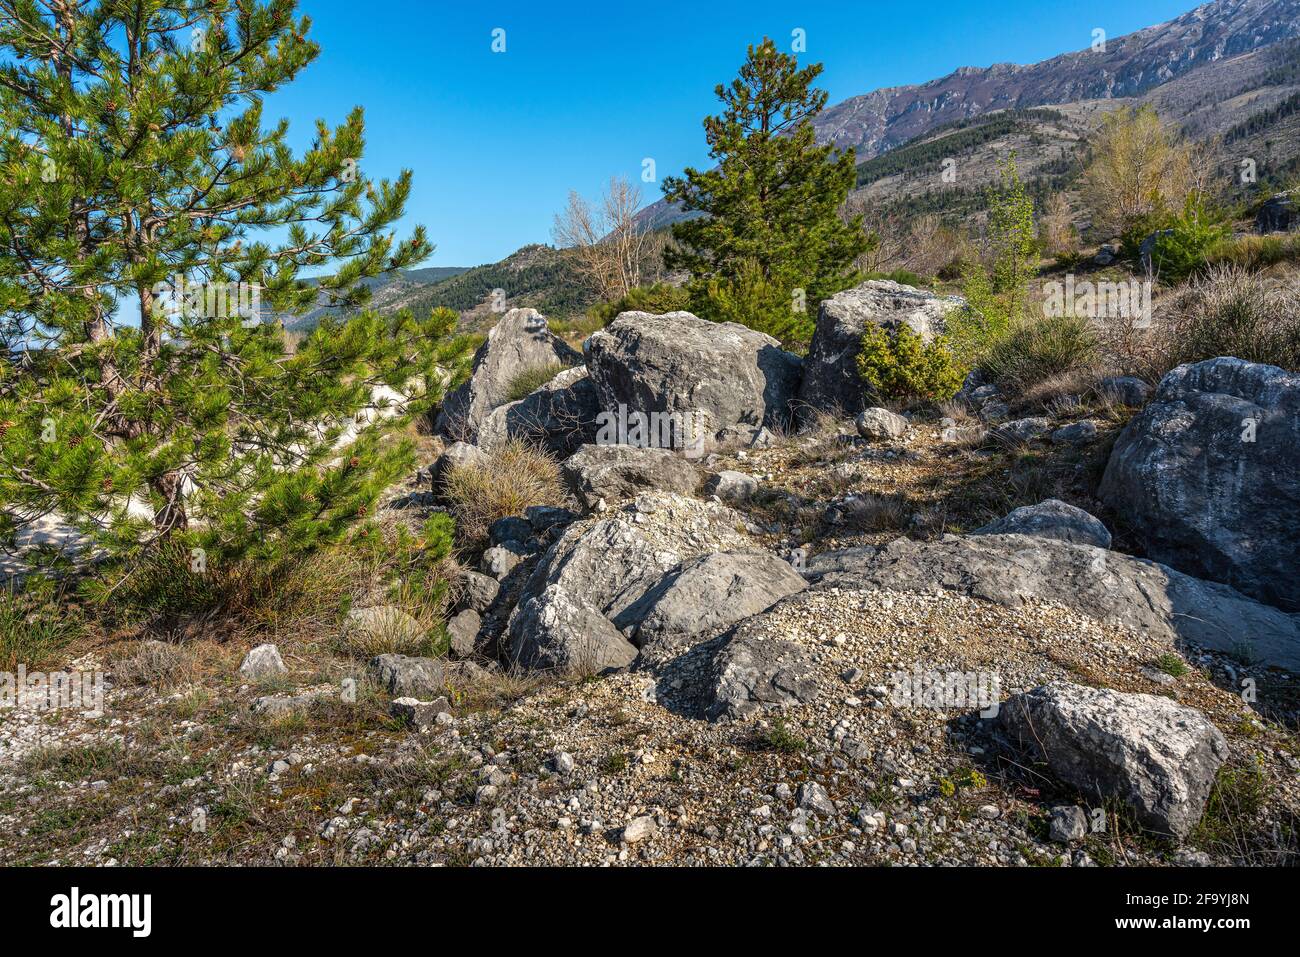 Panorama sur la montagne avec des pins noirs, des buissons et des rochers au premier plan. Parc national de Maiella, Abruzzes, Italie, Europe Banque D'Images